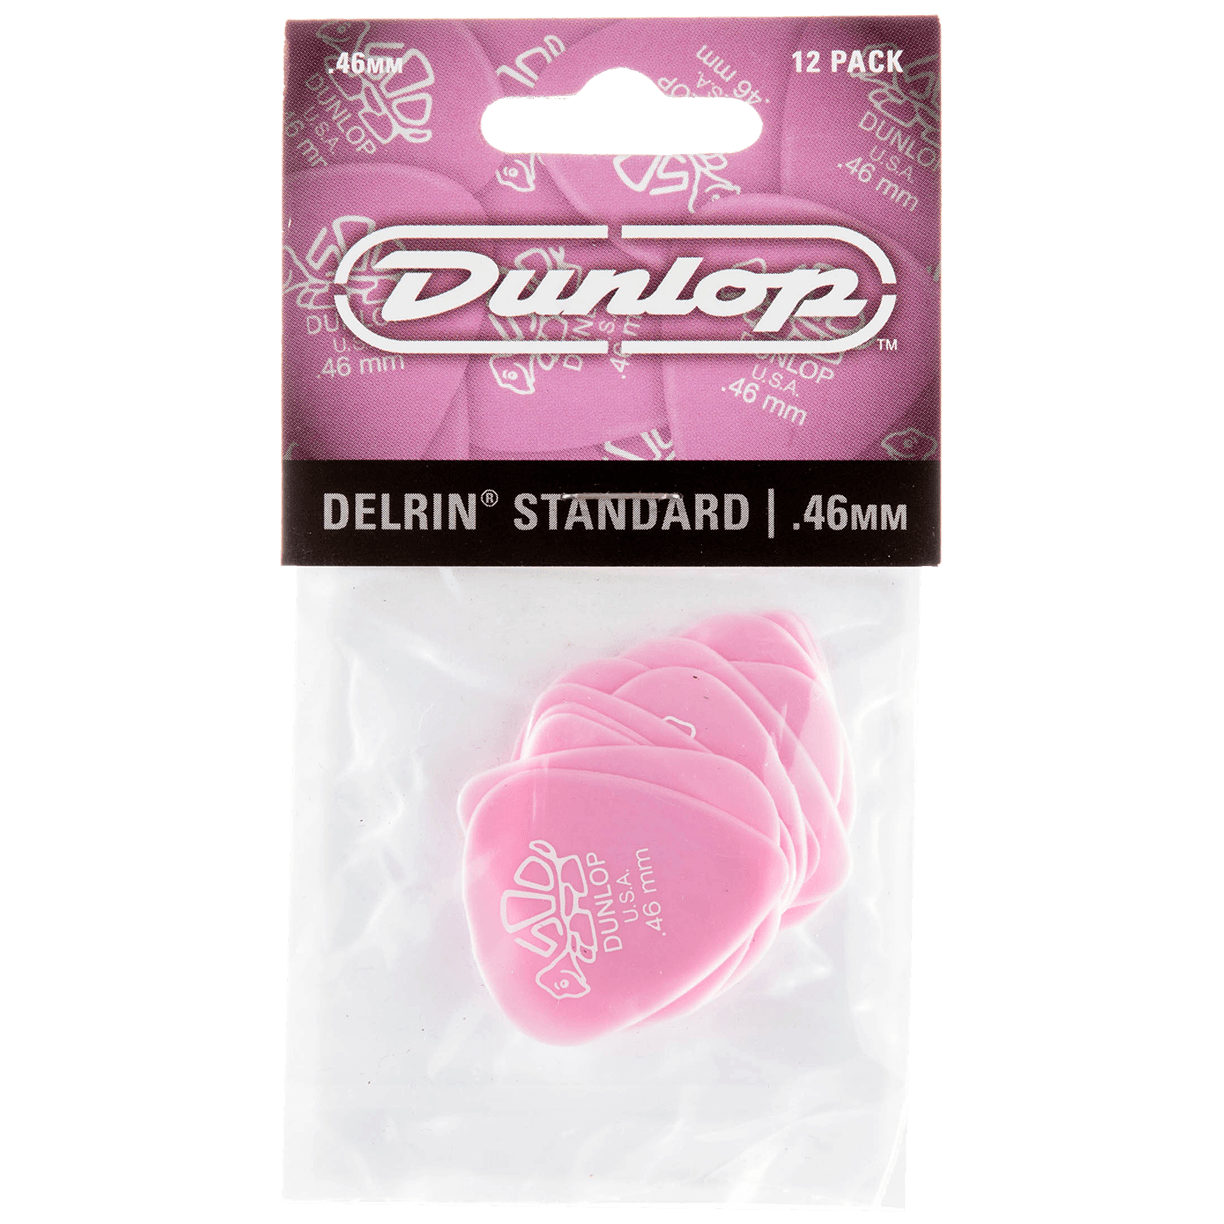 Dunlop Delrin 500 0.46 Player's Pack 12 Stück